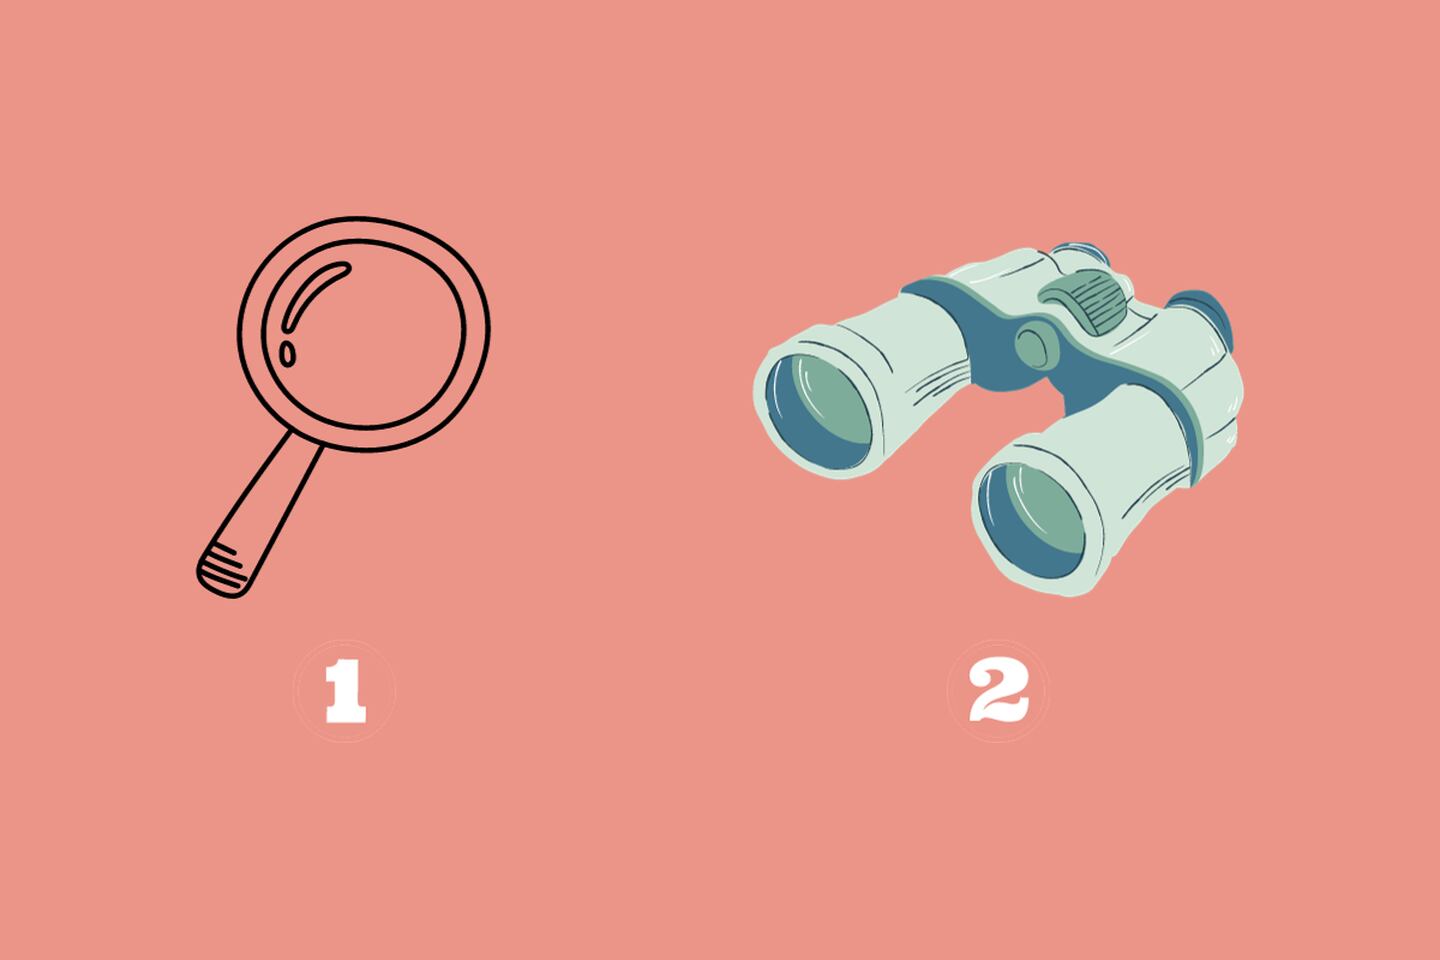 En este test de personalidad debes elegir entre una lupa o un binocular.